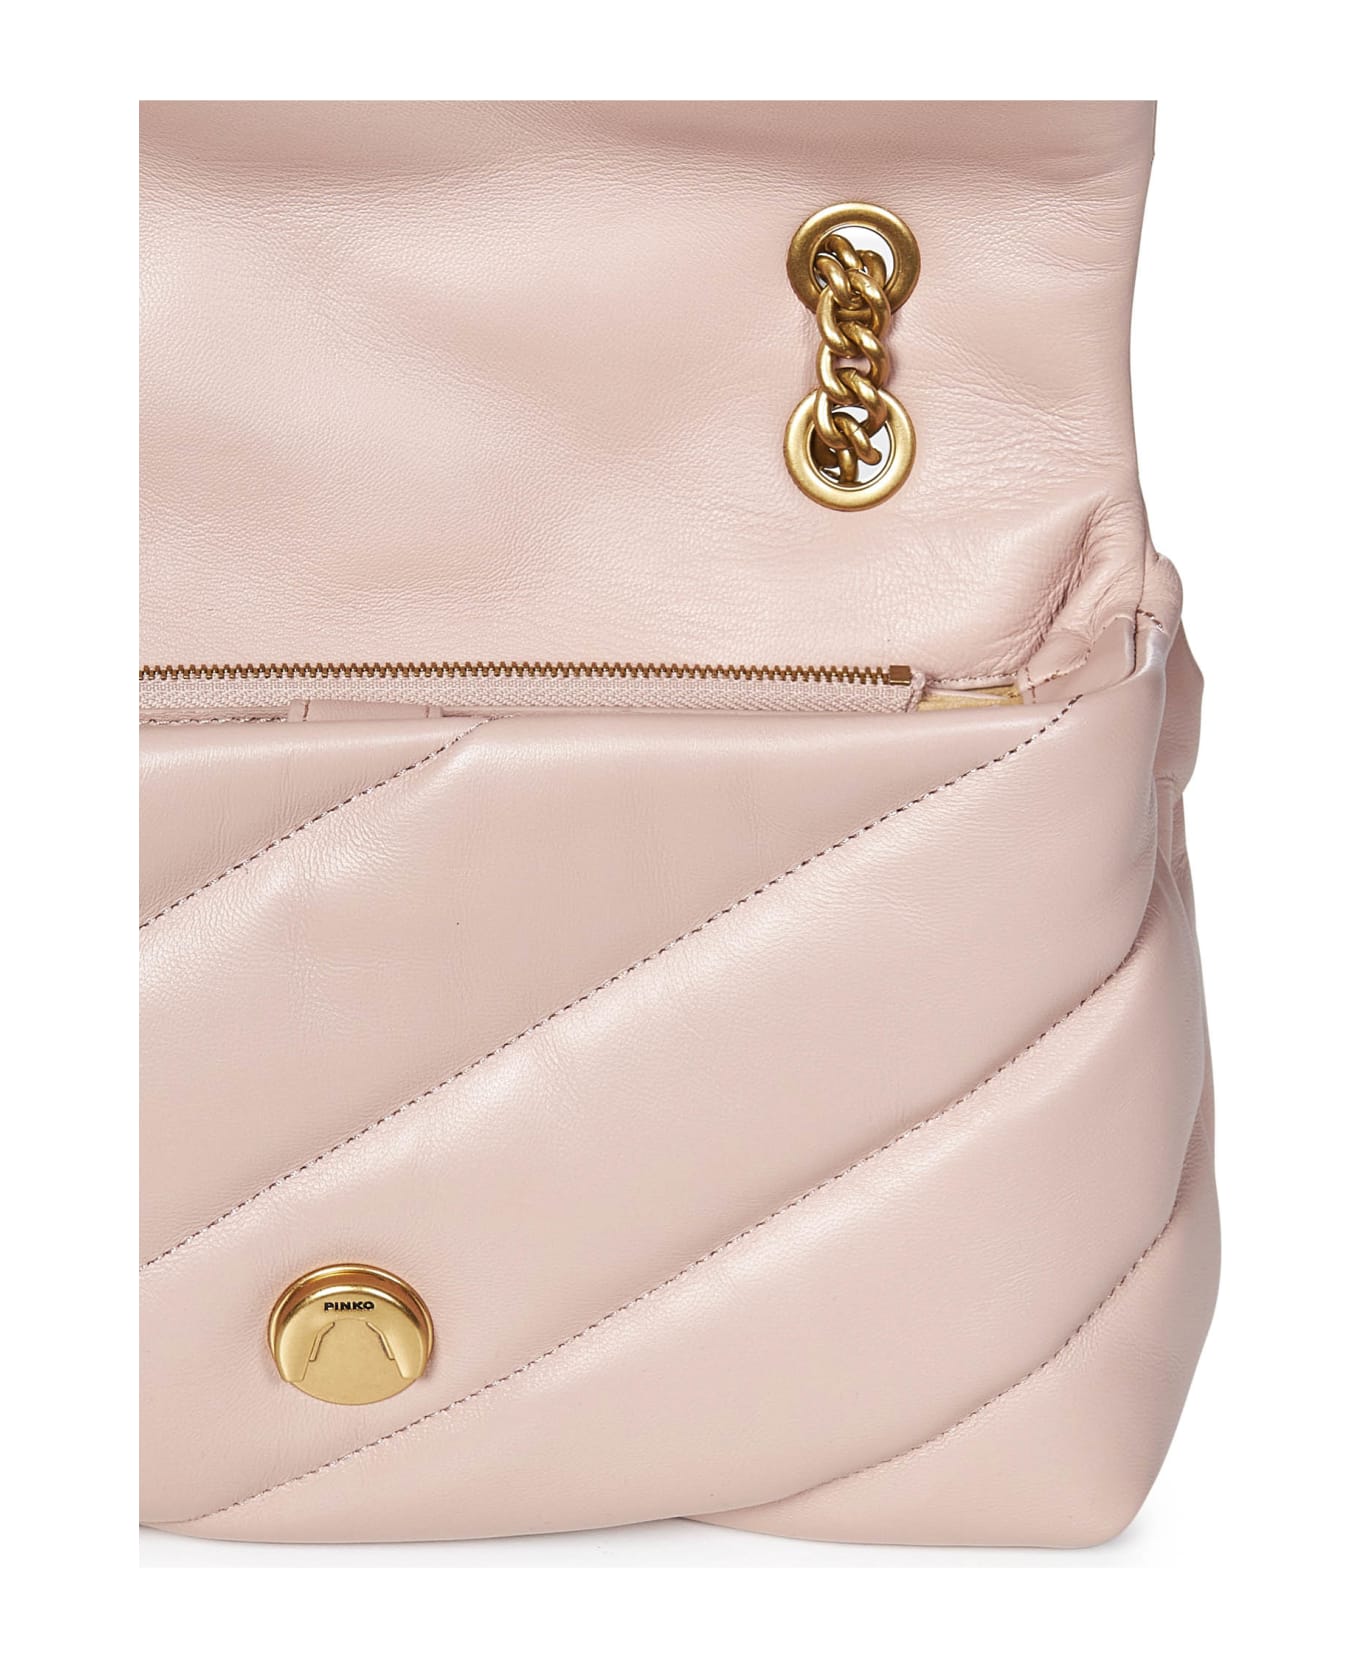 Pinko Classic Love Bag Puff Maxi Quilt Shoulder Bag - Pink